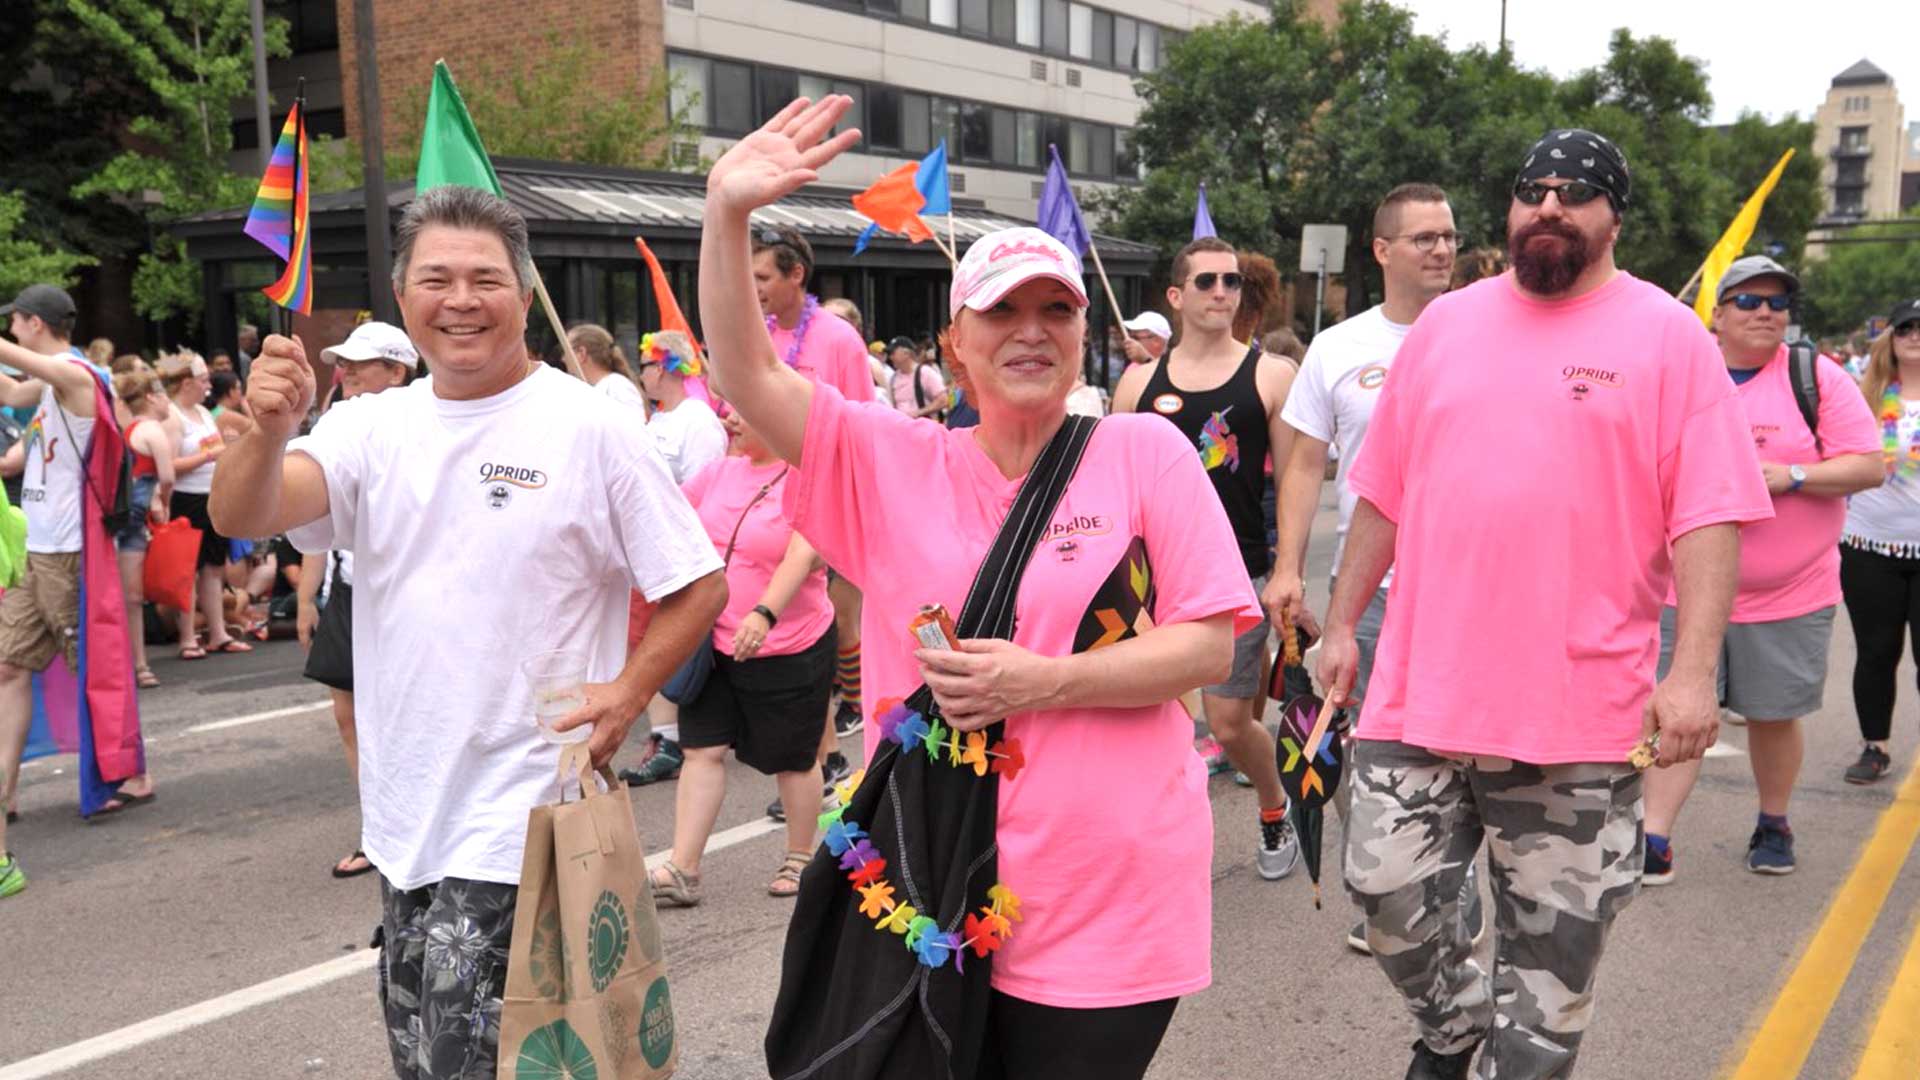 9Pride marches in the 2018 Pride Parade